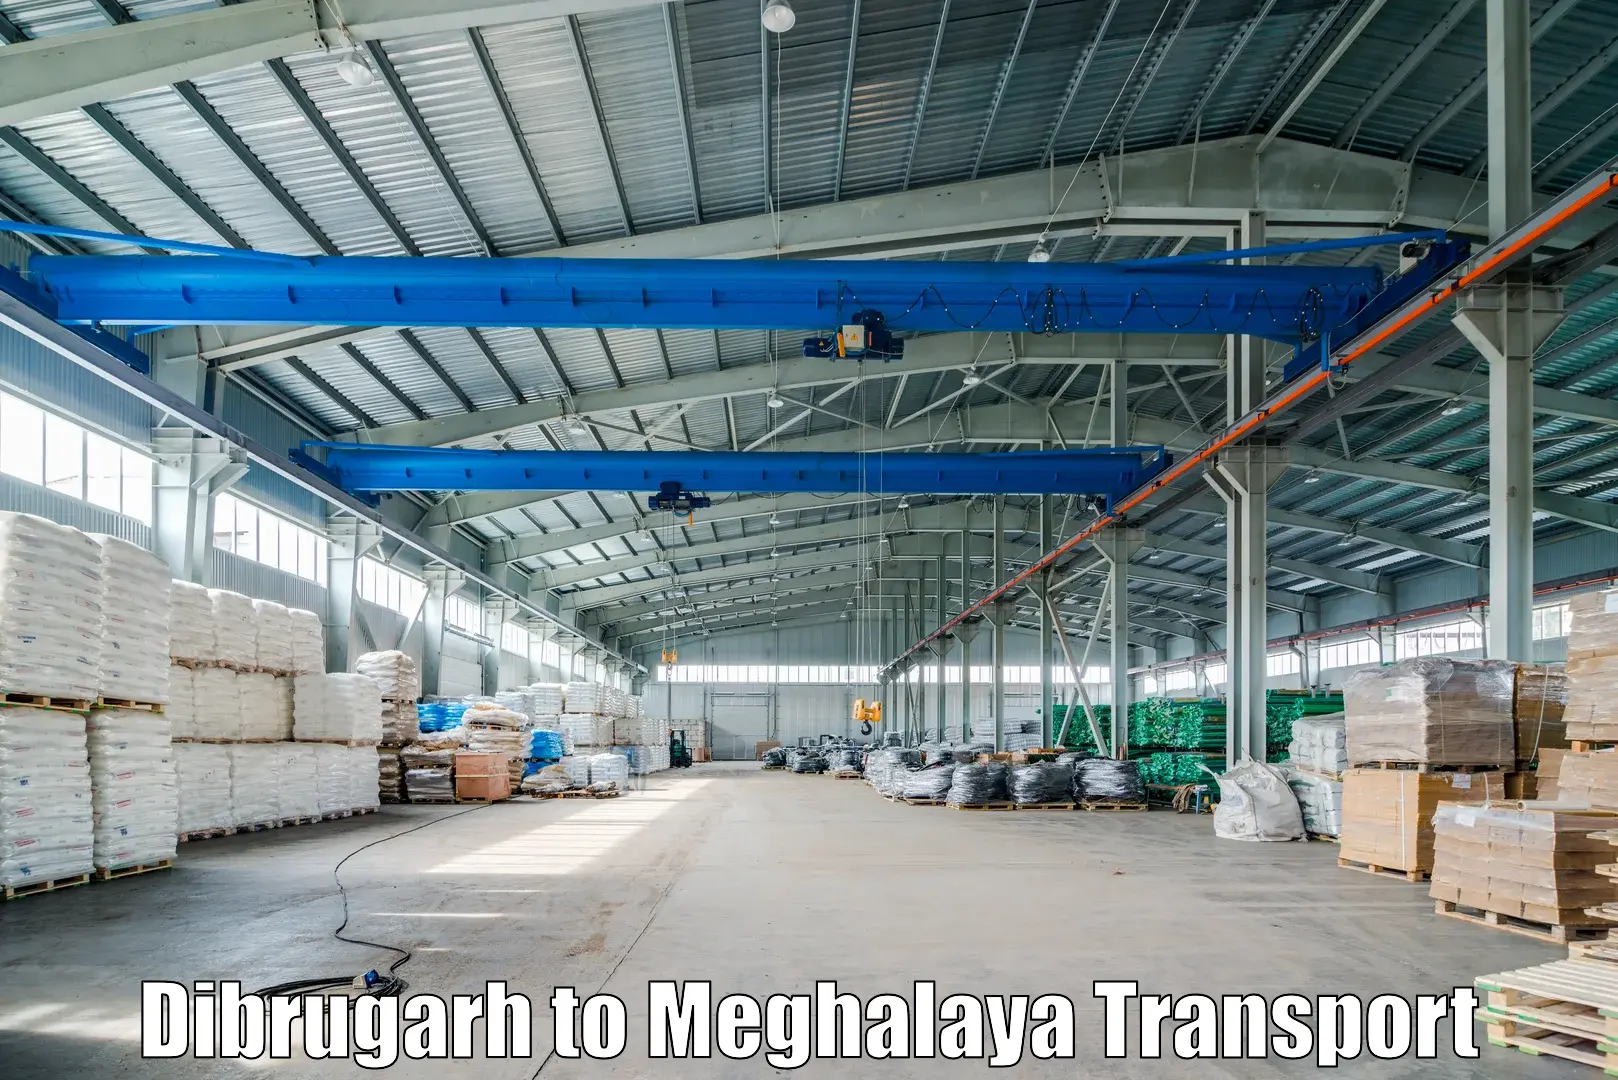 Transport in sharing Dibrugarh to Williamnagar